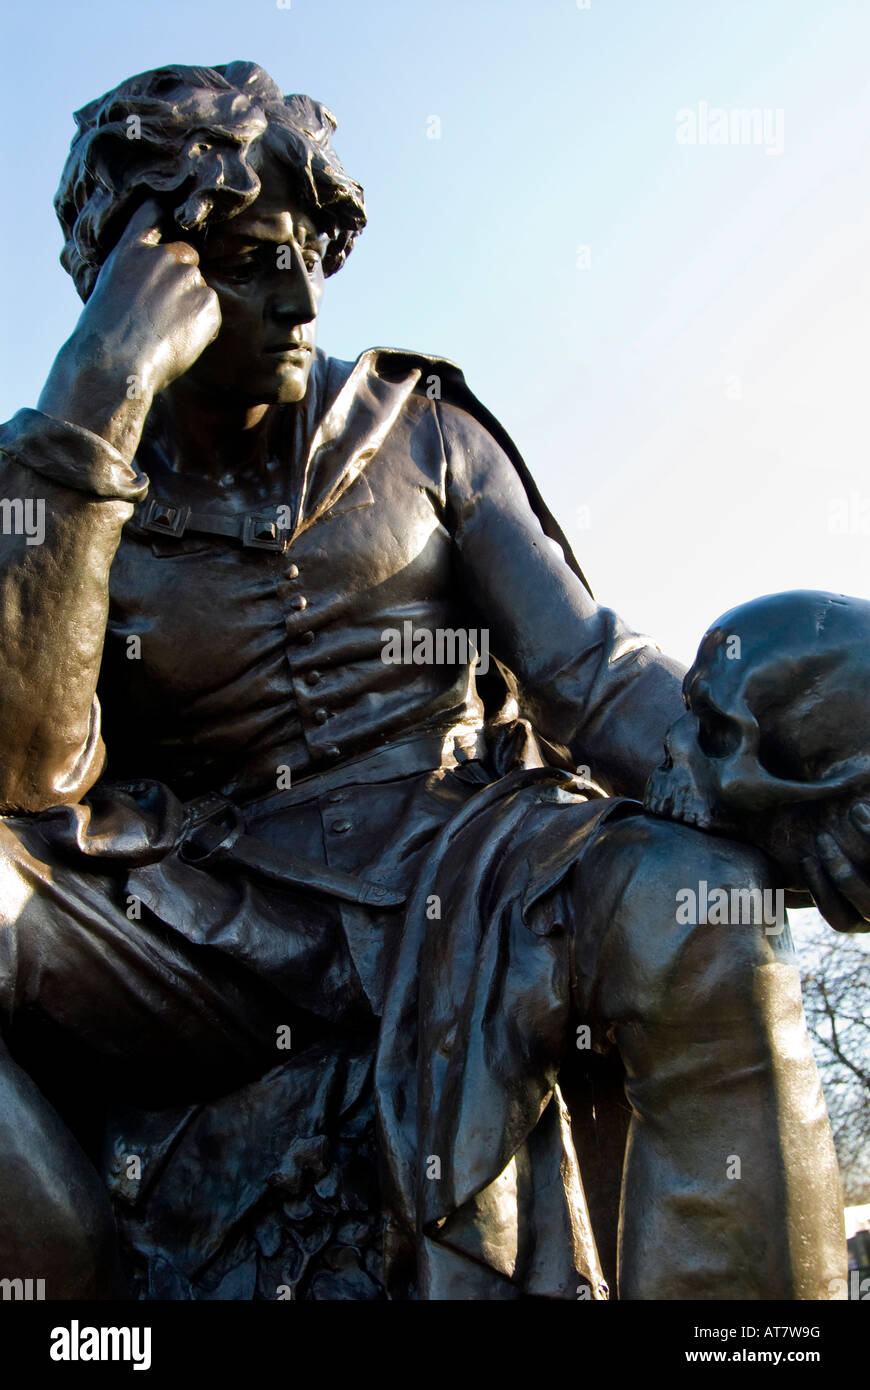 Une statue d'Hamlet tenant le crâne de Yorick, Stratford upon Avon, Warwickshire, Angleterre, Royaume-Uni. Banque D'Images